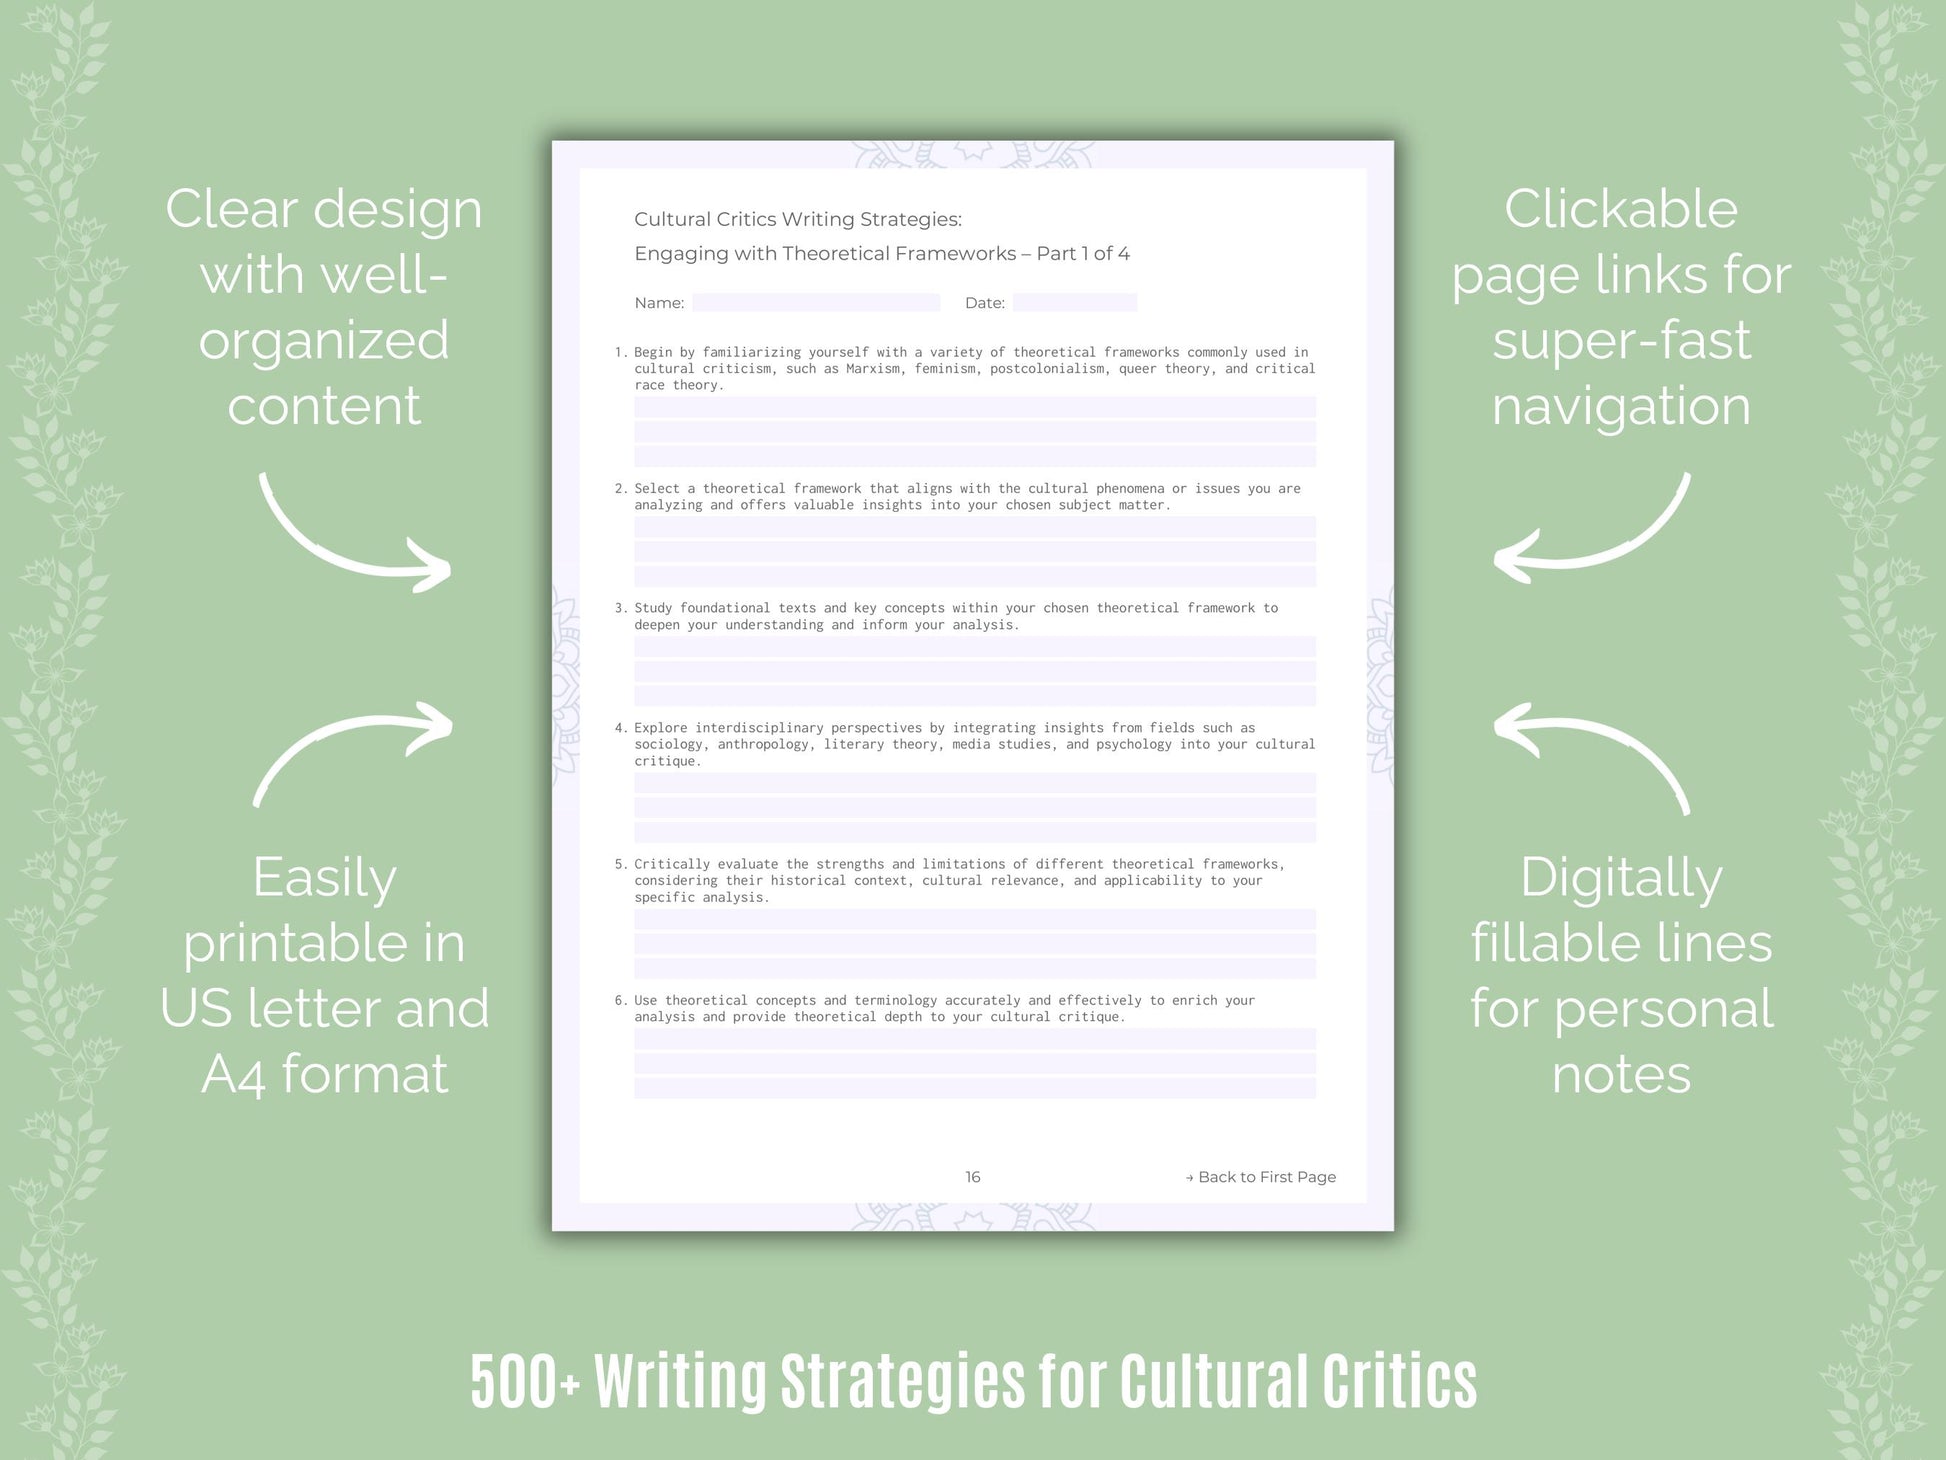 Cultural Critics Writing Strategies